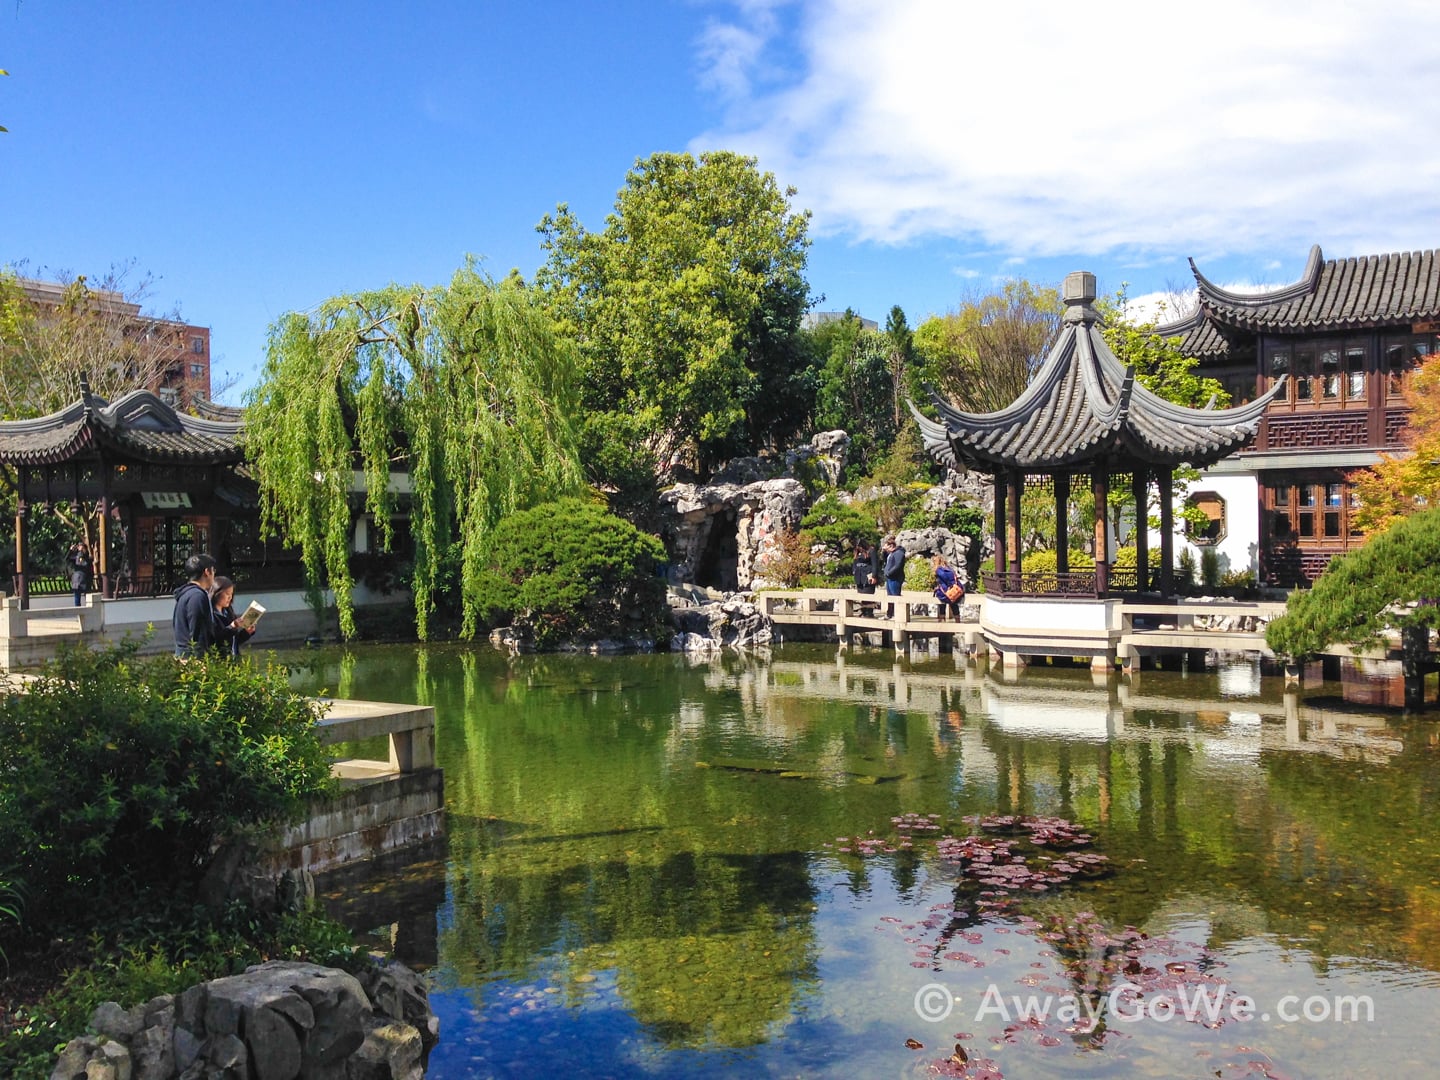 Lake Zither at Lan Su Chinese Garden